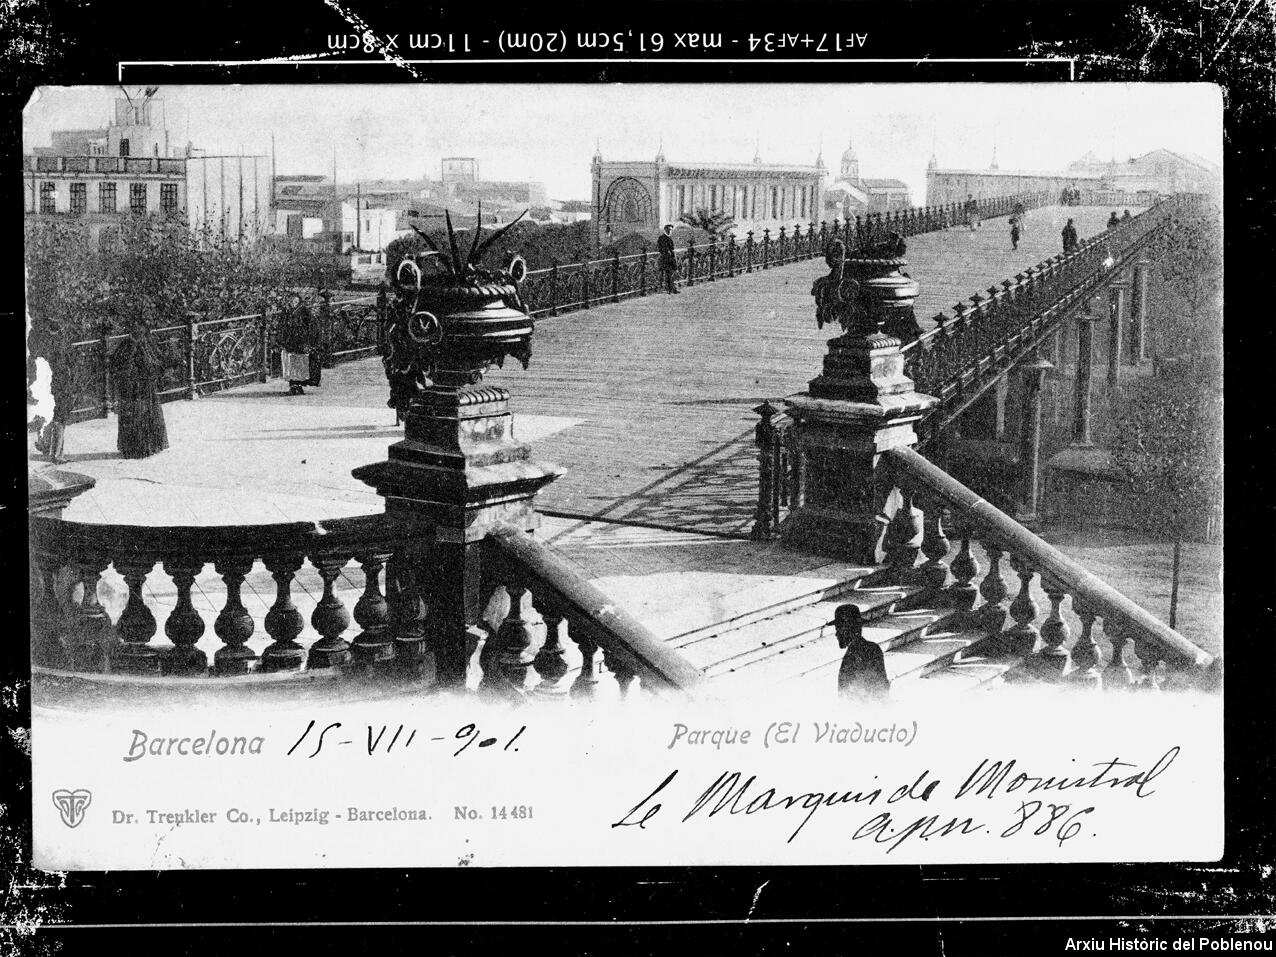 22113 Pont exposició 1901